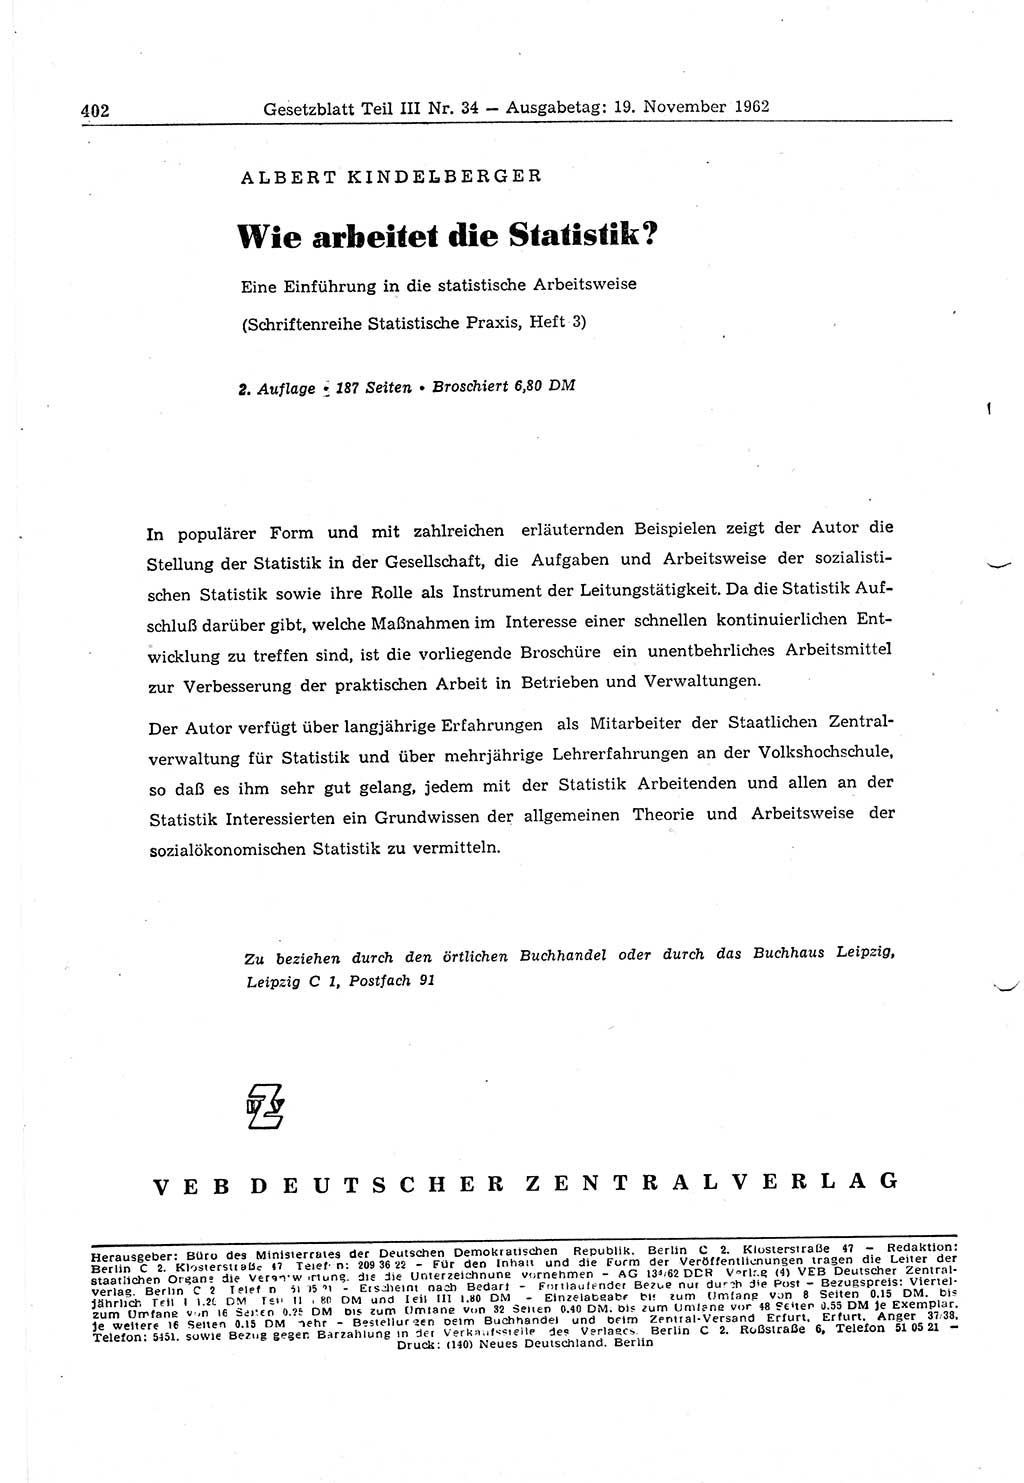 Gesetzblatt (GBl.) der Deutschen Demokratischen Republik (DDR) Teil ⅠⅠⅠ 1962, Seite 402 (GBl. DDR ⅠⅠⅠ 1962, S. 402)